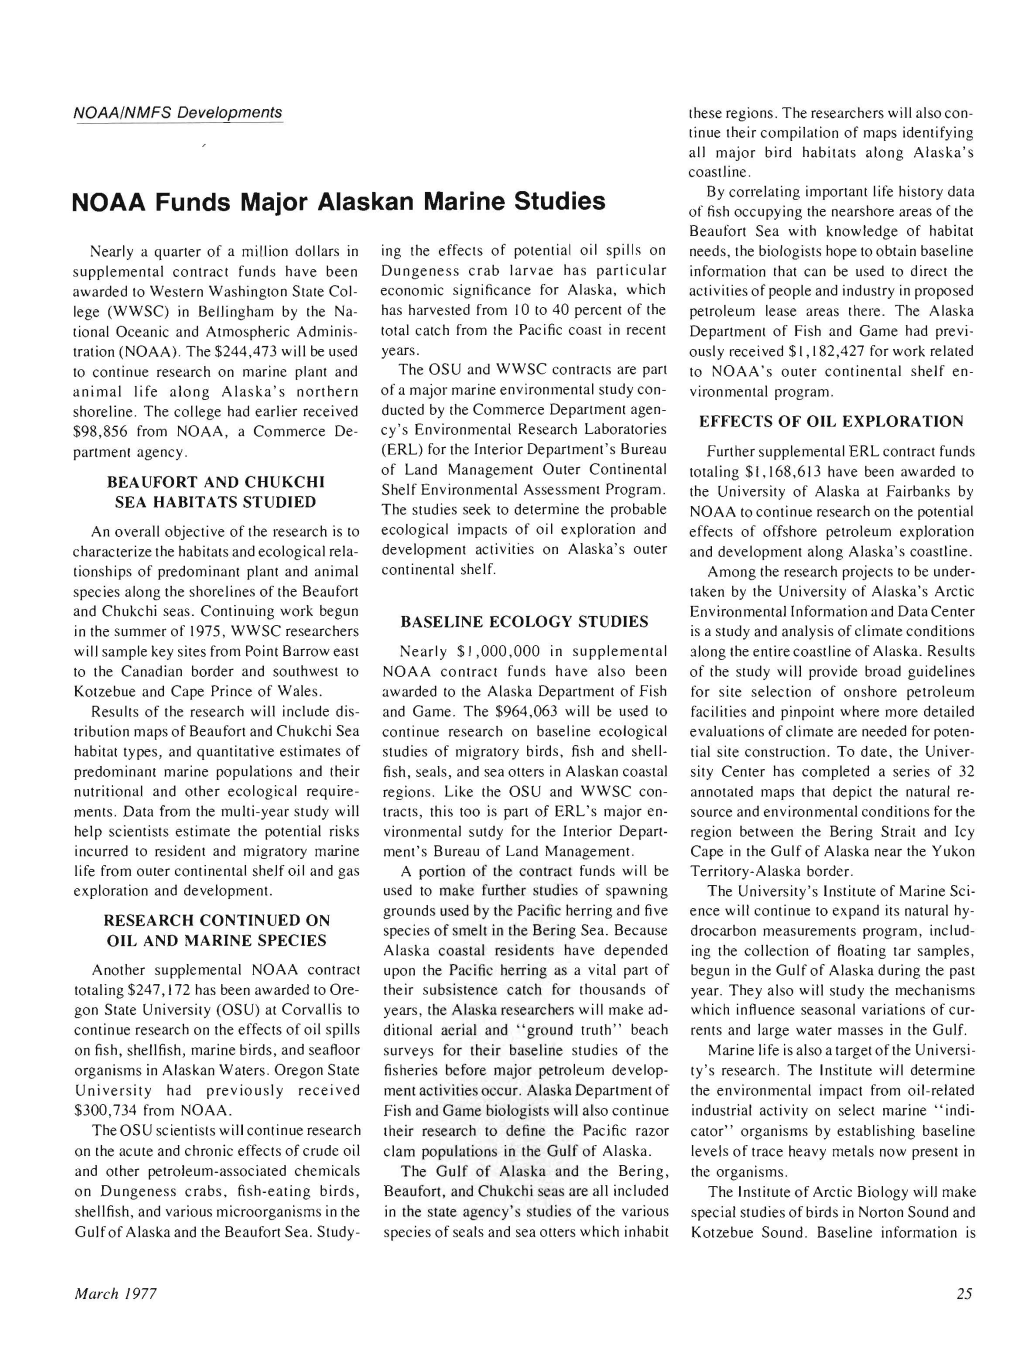 NOAA Funds Major Alaskan Marine Studies